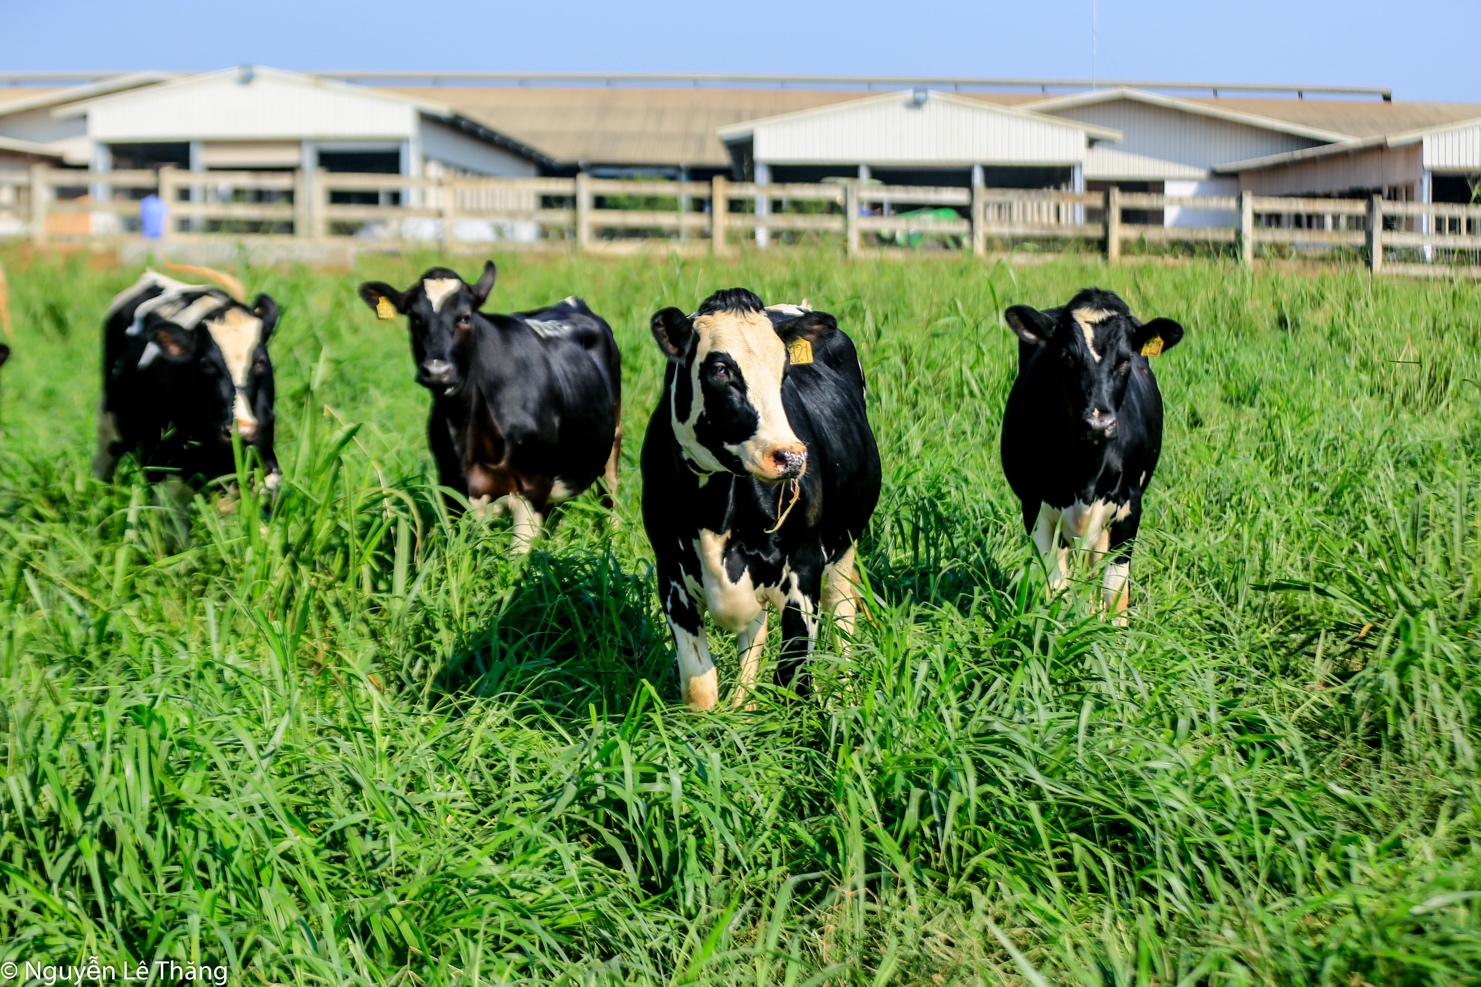 Cụm trang trại bò sữa đạt kỷ lục thế giới của TH: Dấu ấn nông nghiệp sạch Việt Nam - Ảnh 3.